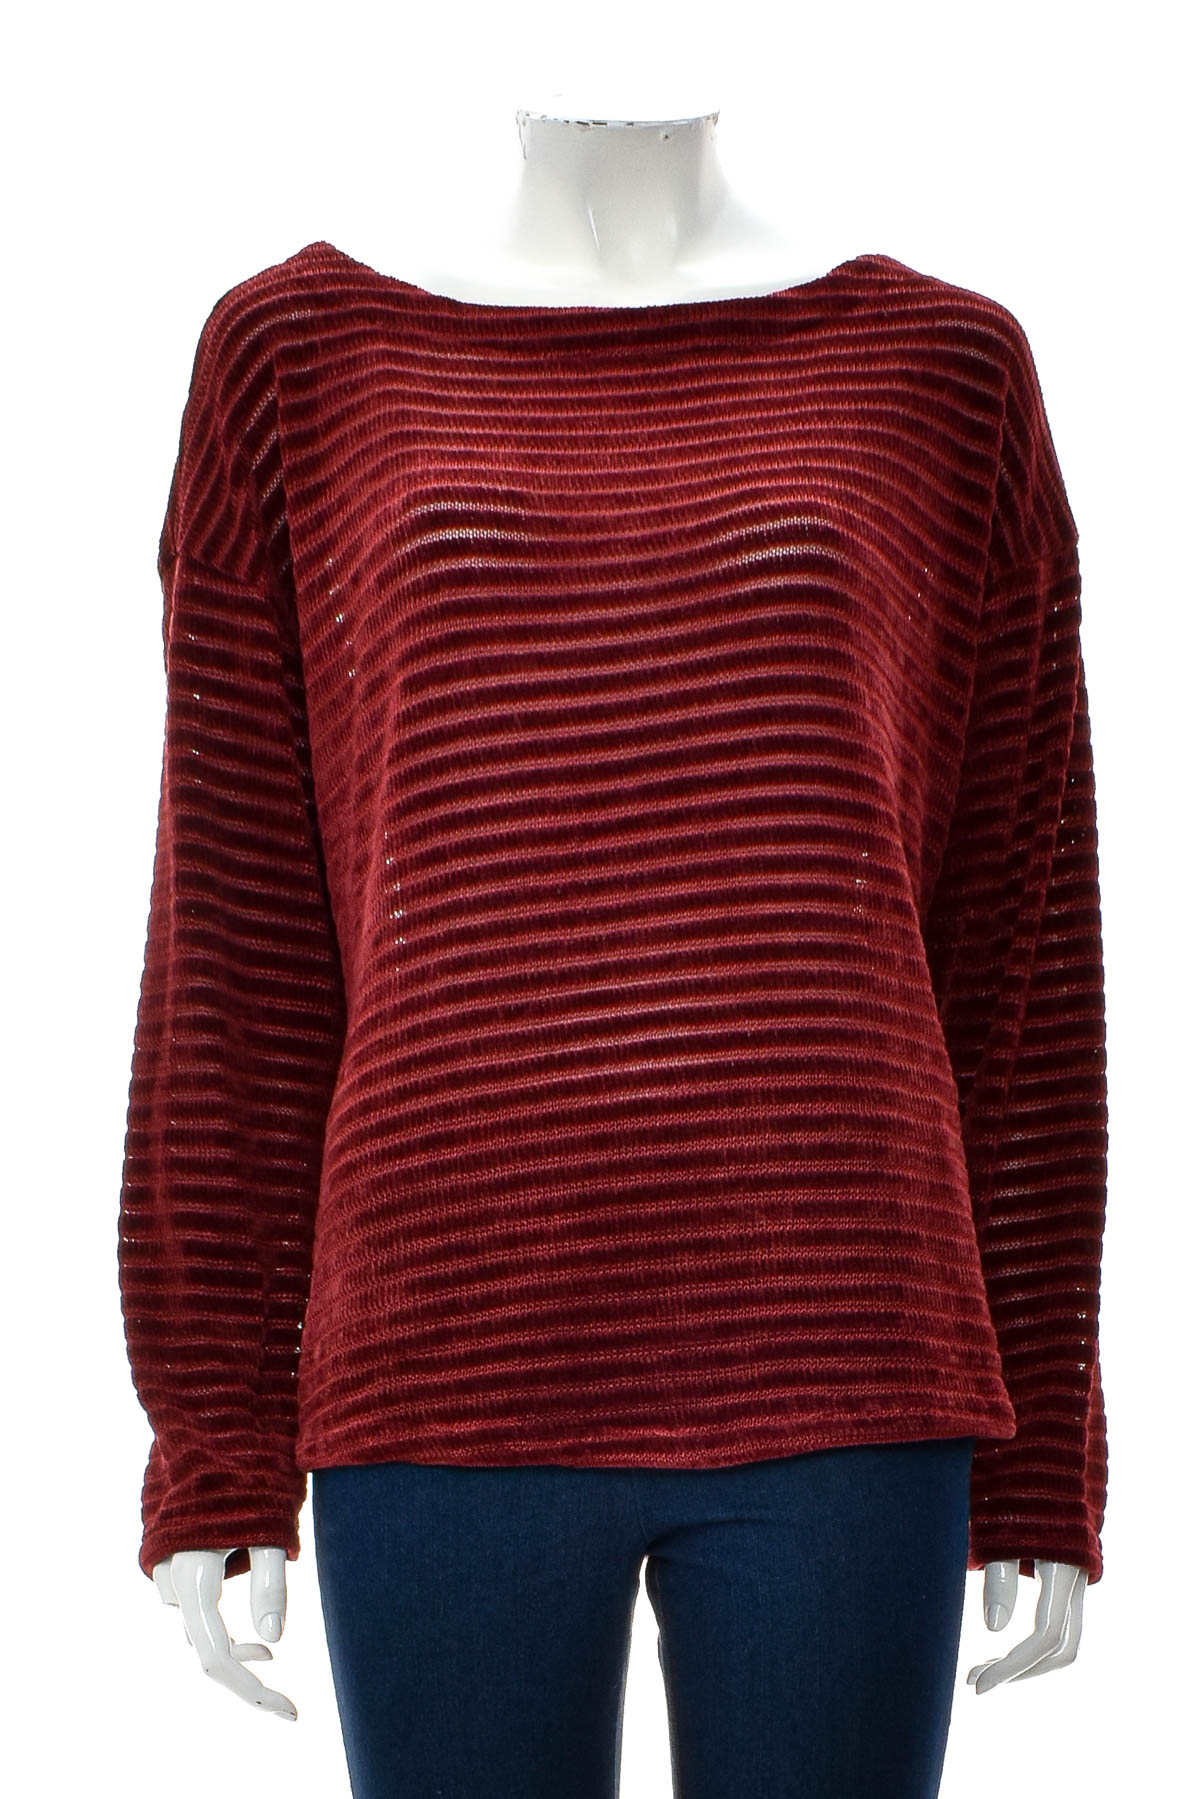 Women's sweater - JONES NEW YORK - 0